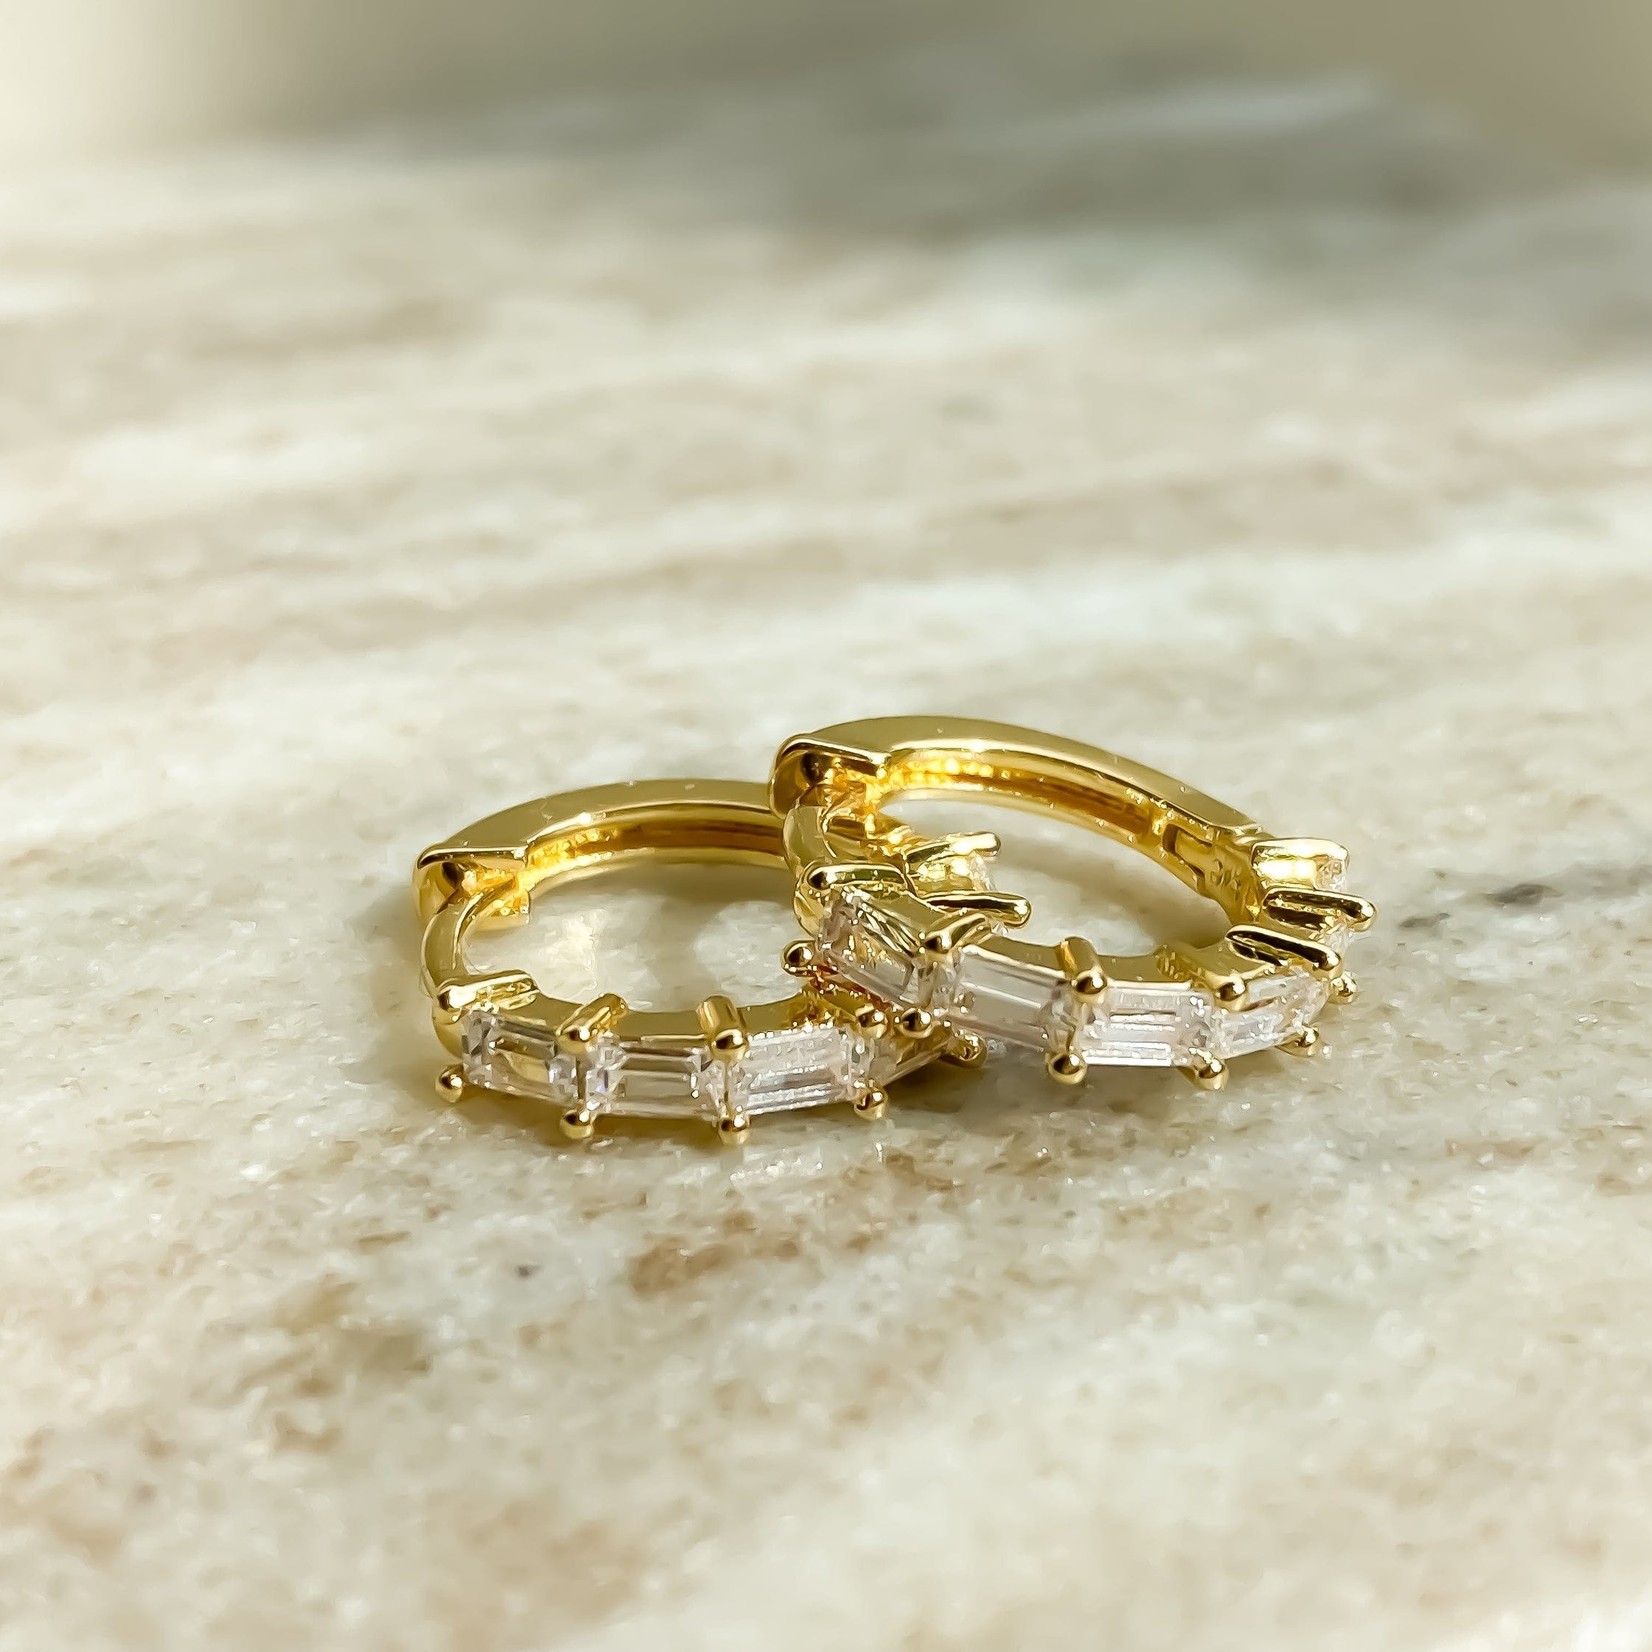 eLiasz and eLLa "Romantic" CZ Hoop Earrings in Gold